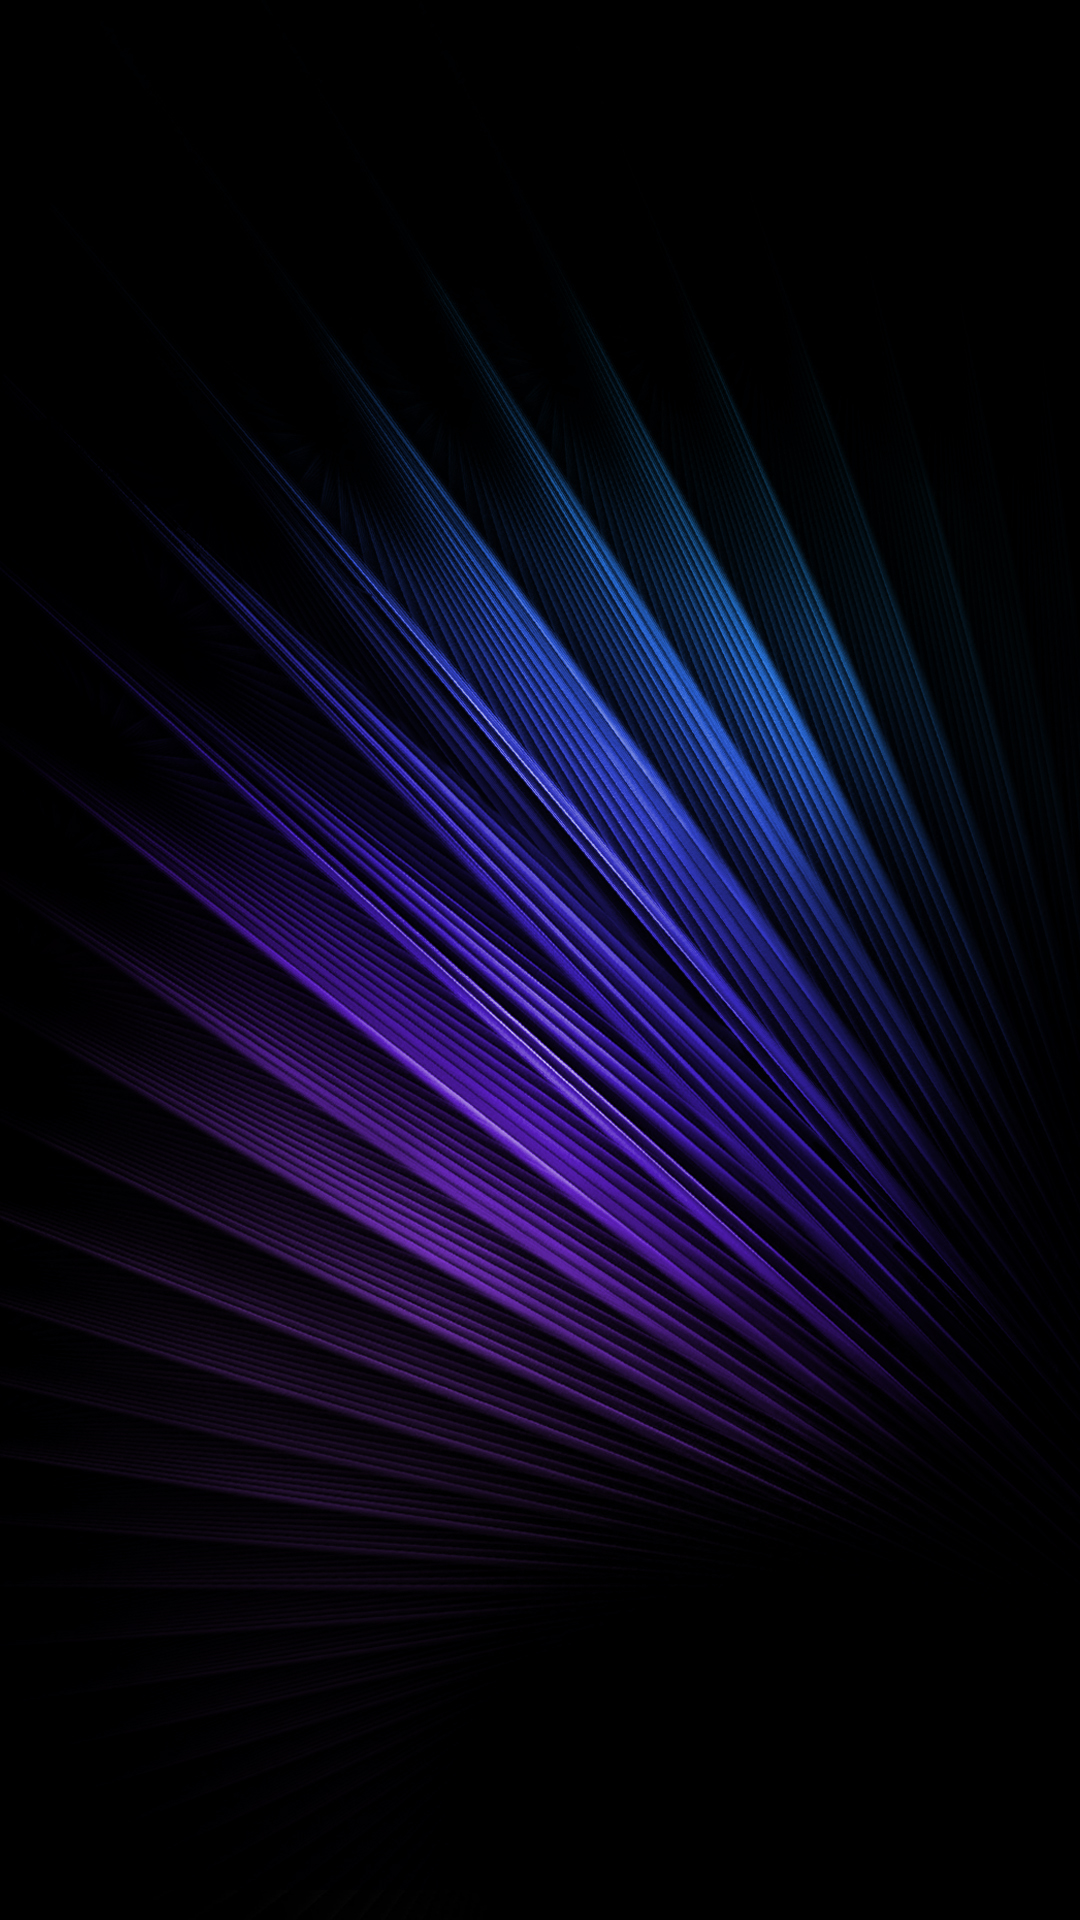 optische täuschung iphone wallpaper,blau,schwarz,violett,lila,elektrisches blau